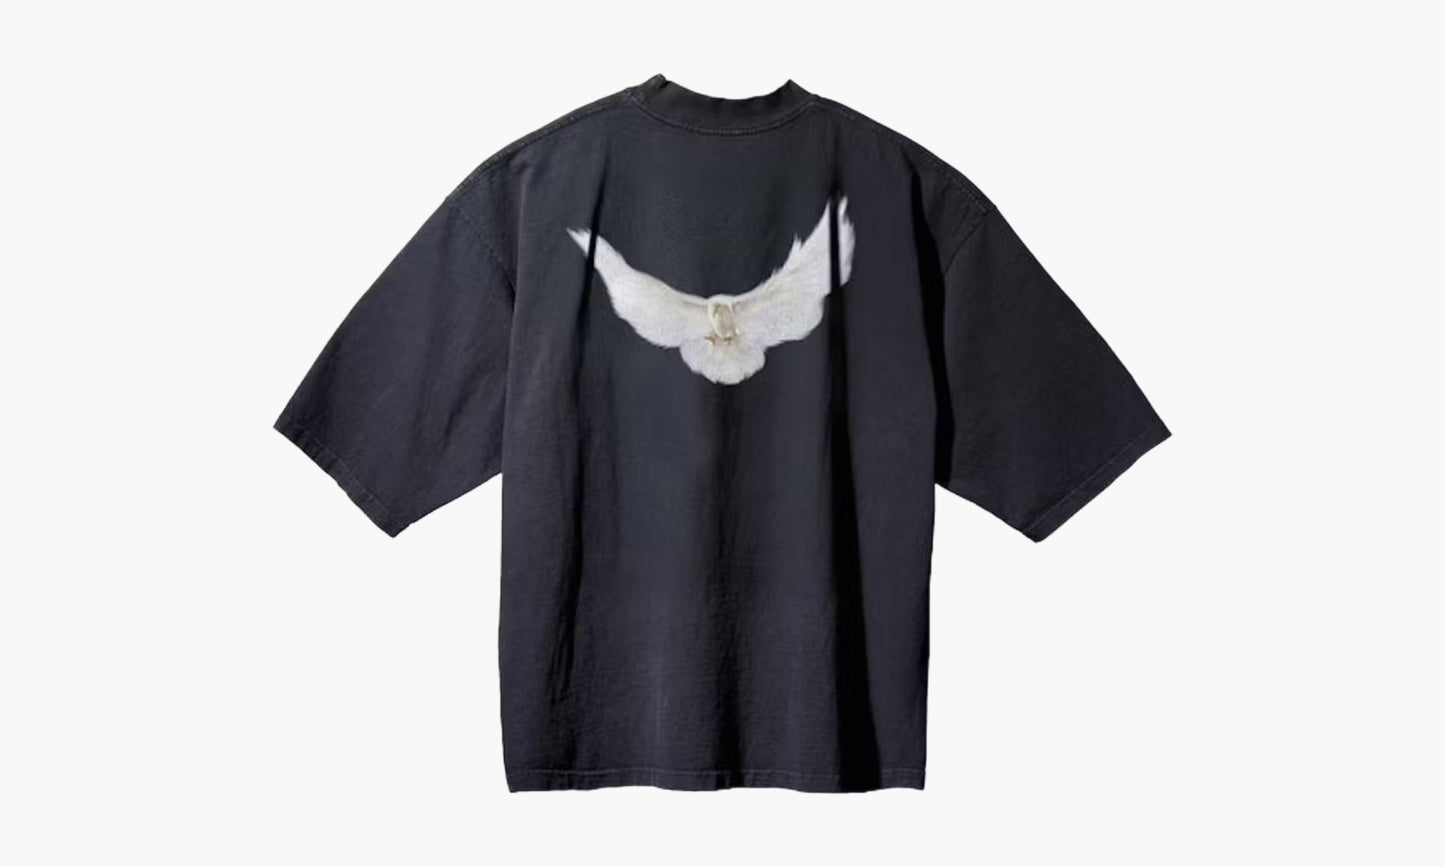 Yeezy x GAP Engineered by Balenciaga Dove 3/4 Sleeve Tee Black | The Sortage